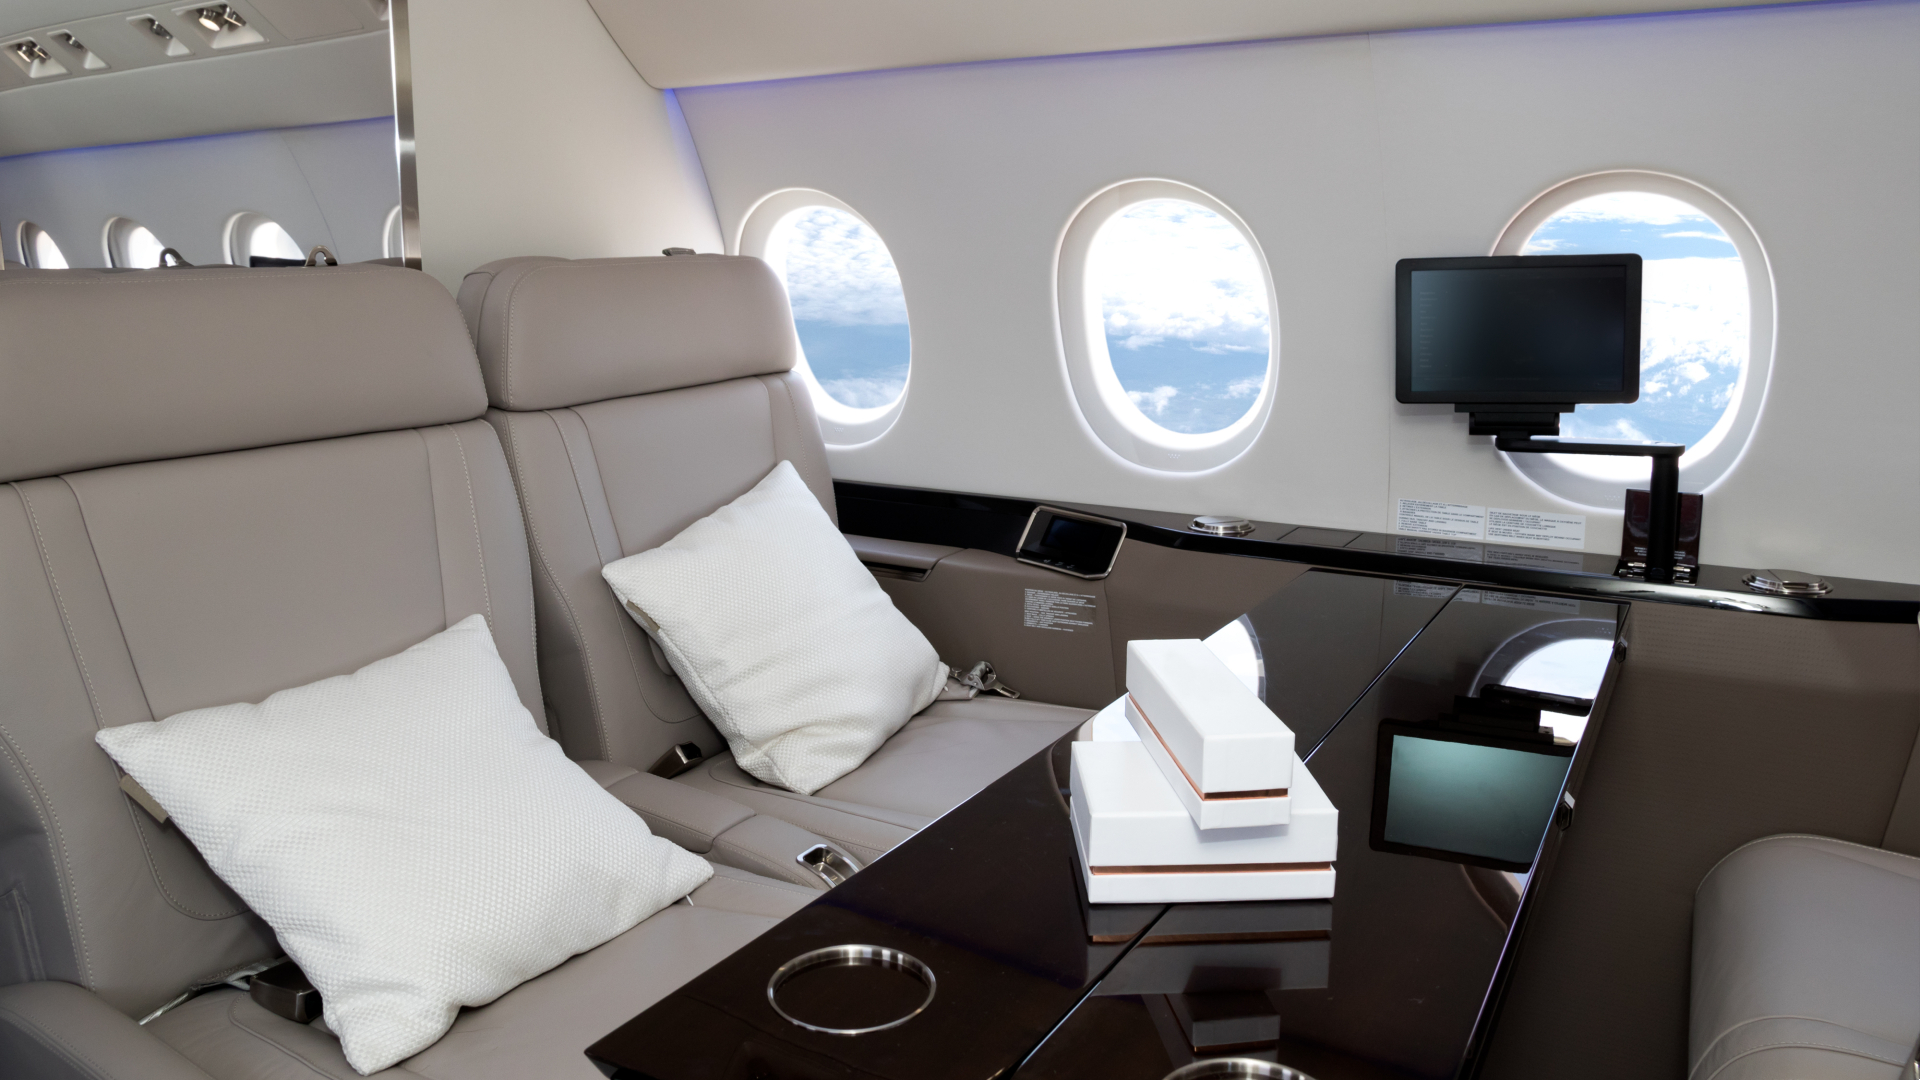 Luxury jet interior